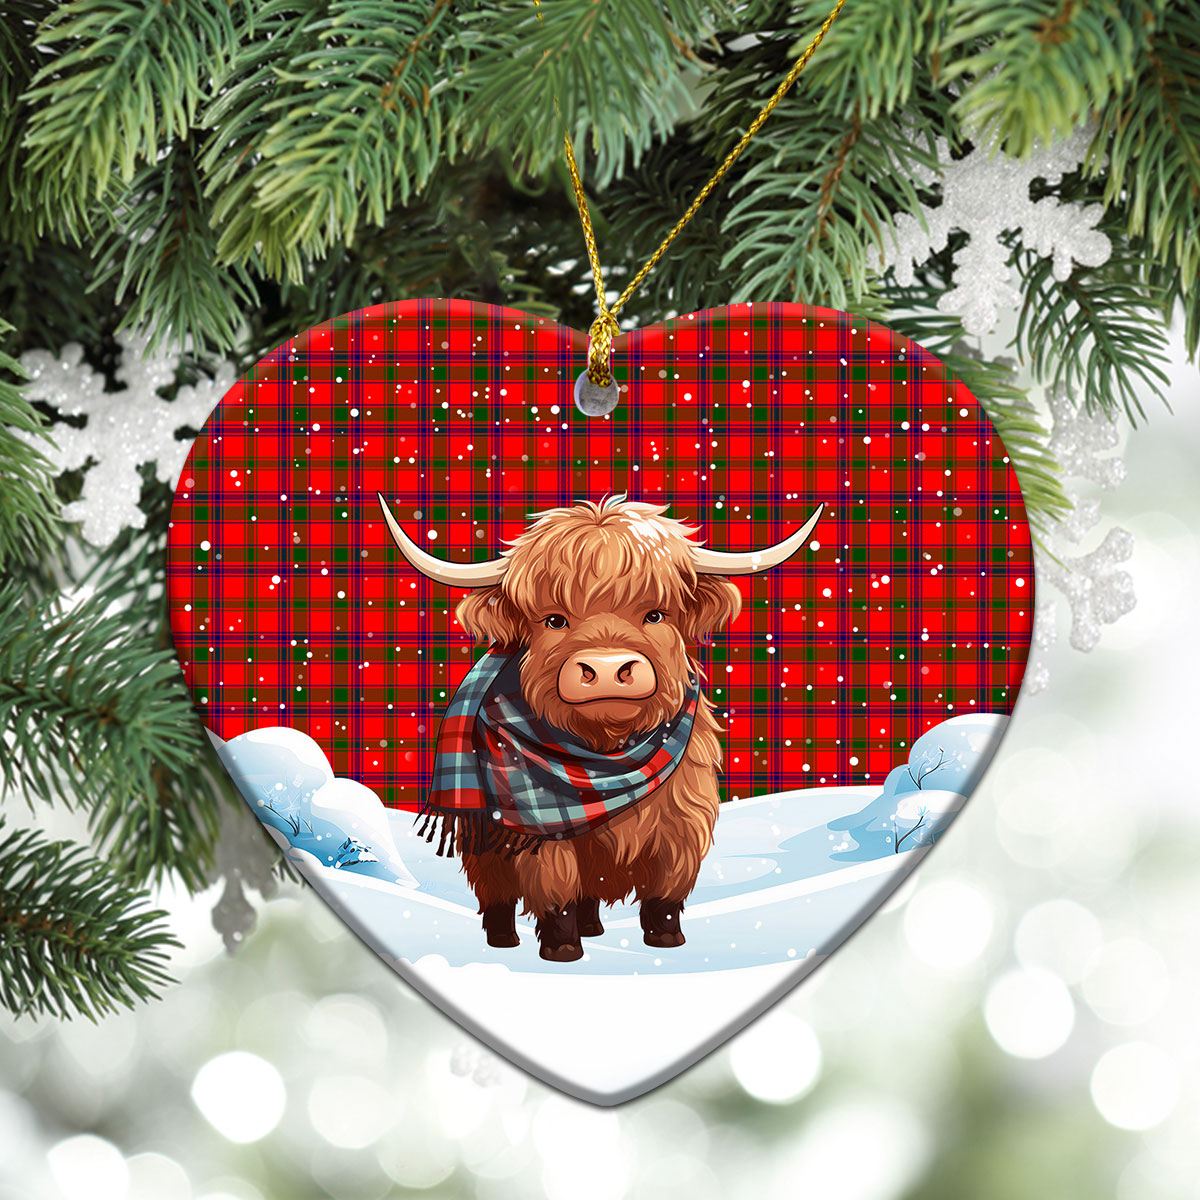 Bain Tartan Christmas Ceramic Ornament - Highland Cows Snow Style